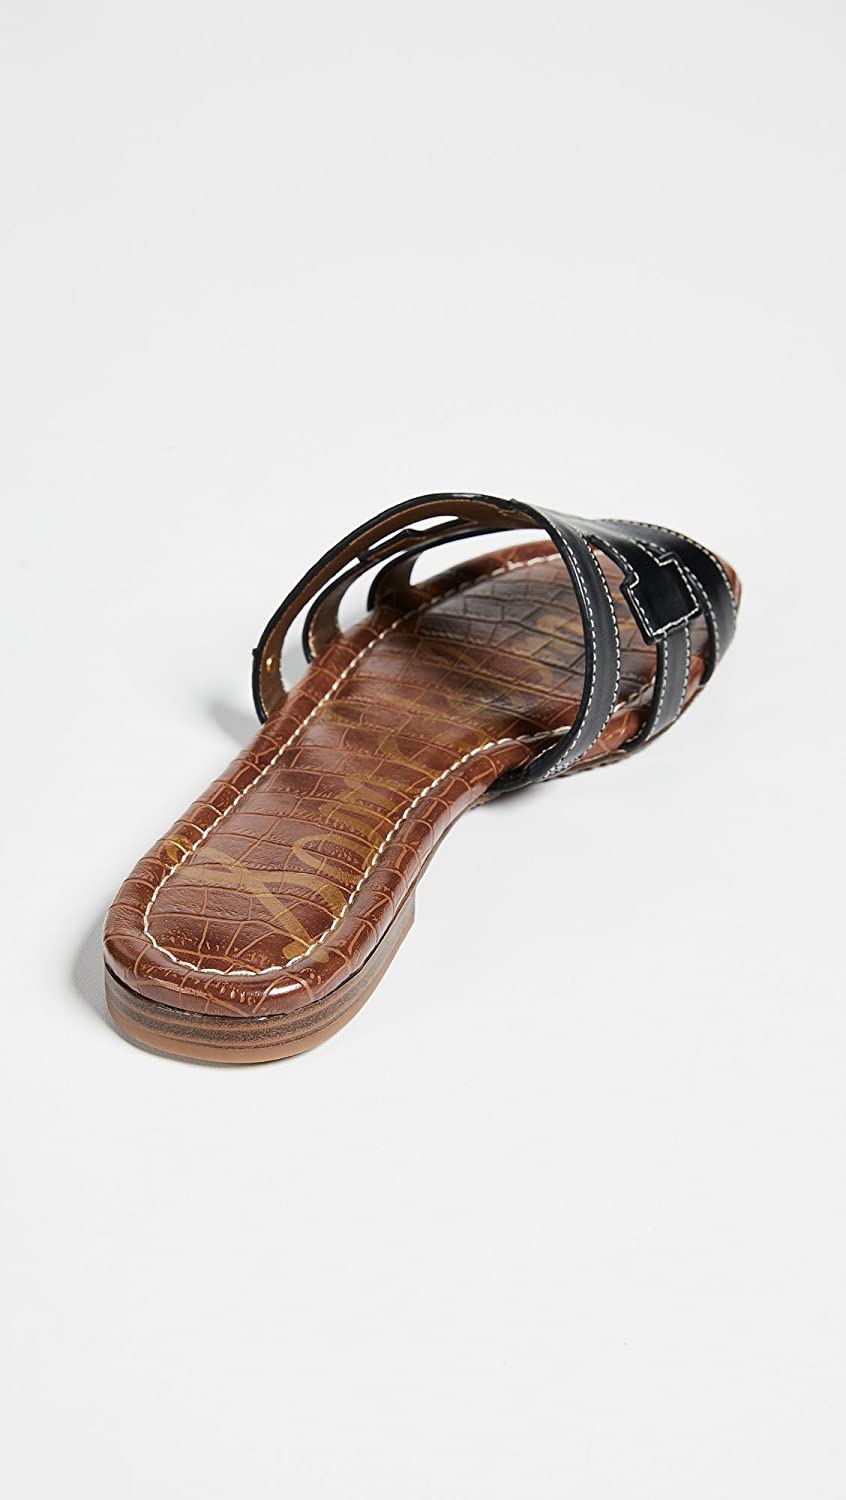 Sam Edelman Women's Bay Classic Slide Sandal, Black, Size 11.0 dlSE | eBay